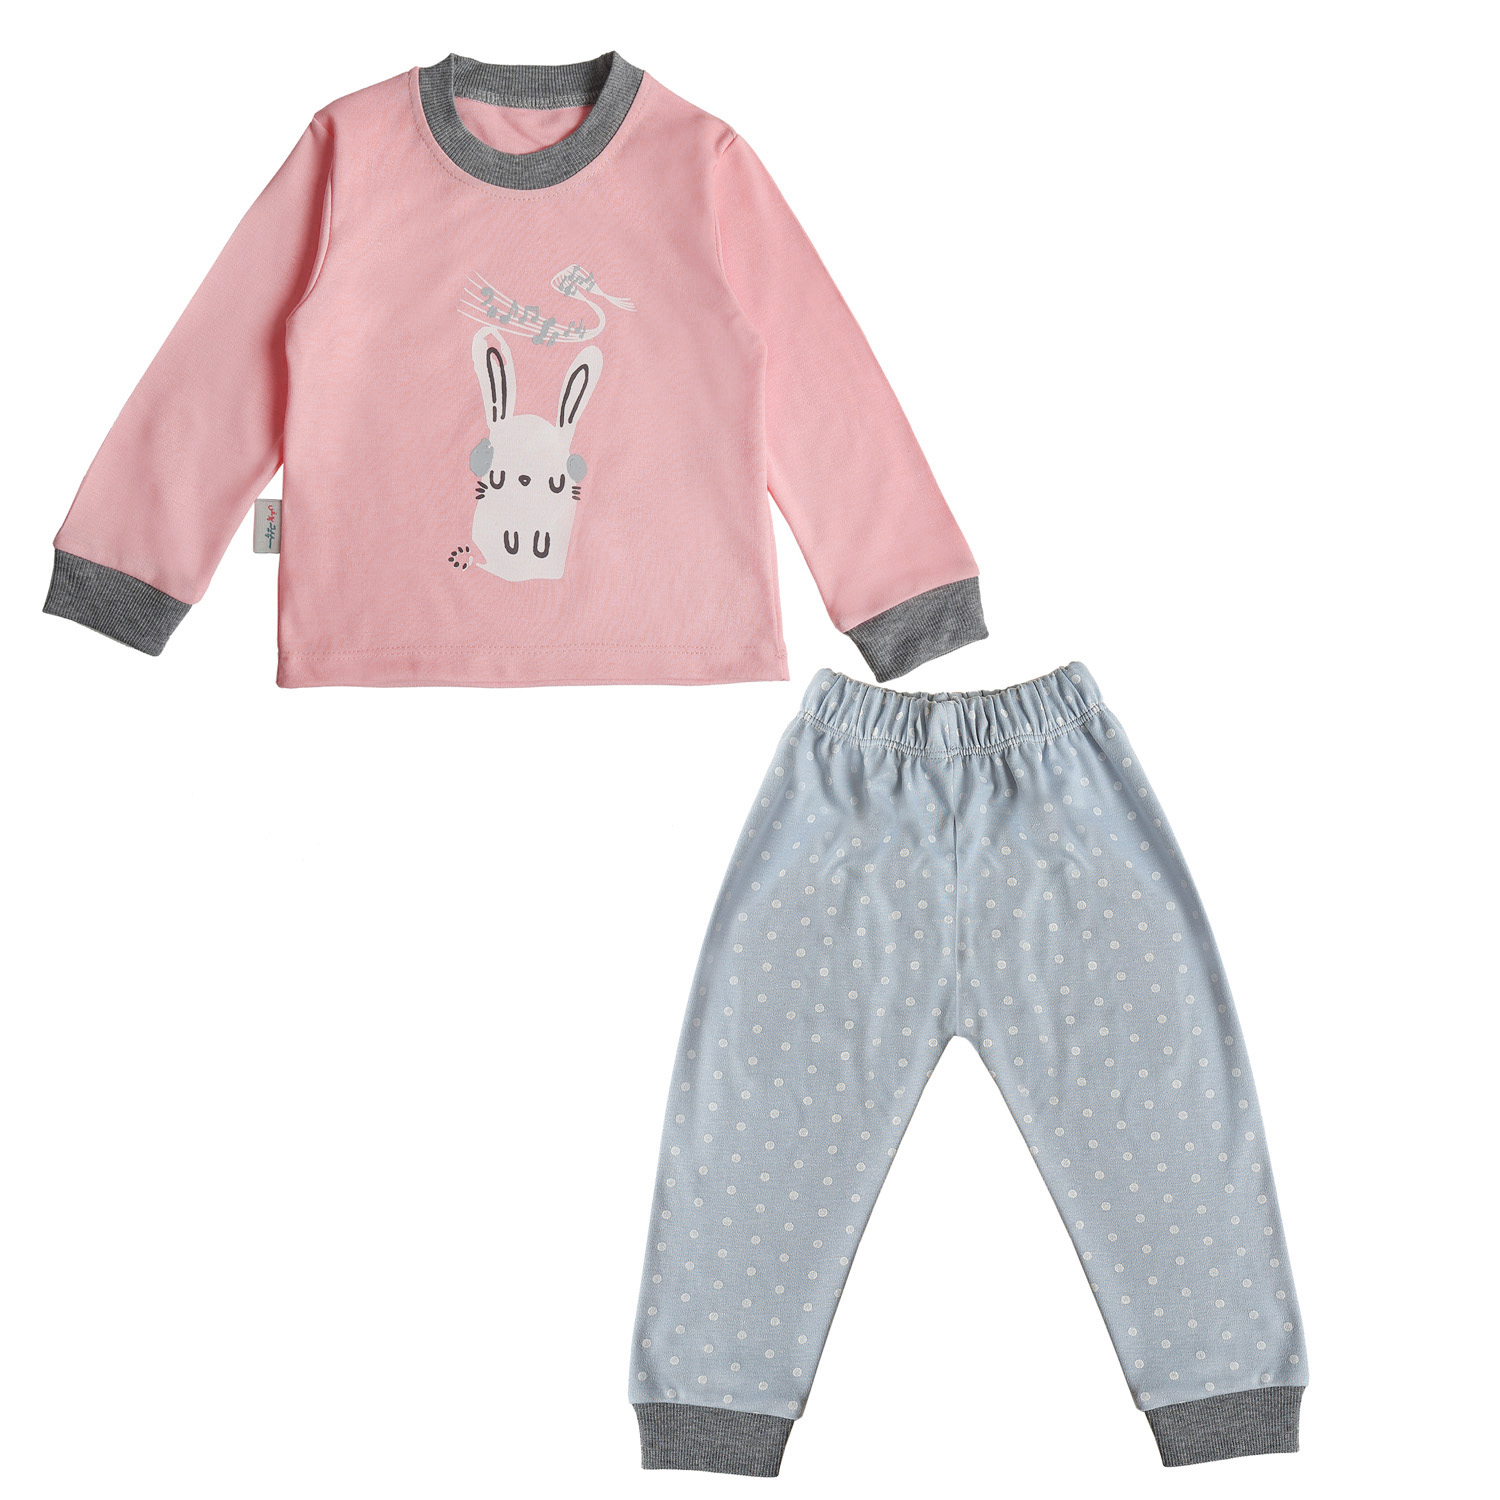 ست تی شرت آستین بلند و شلوار بچگانه سپیدپوش مدل خرگوش و موزیک -  - 12